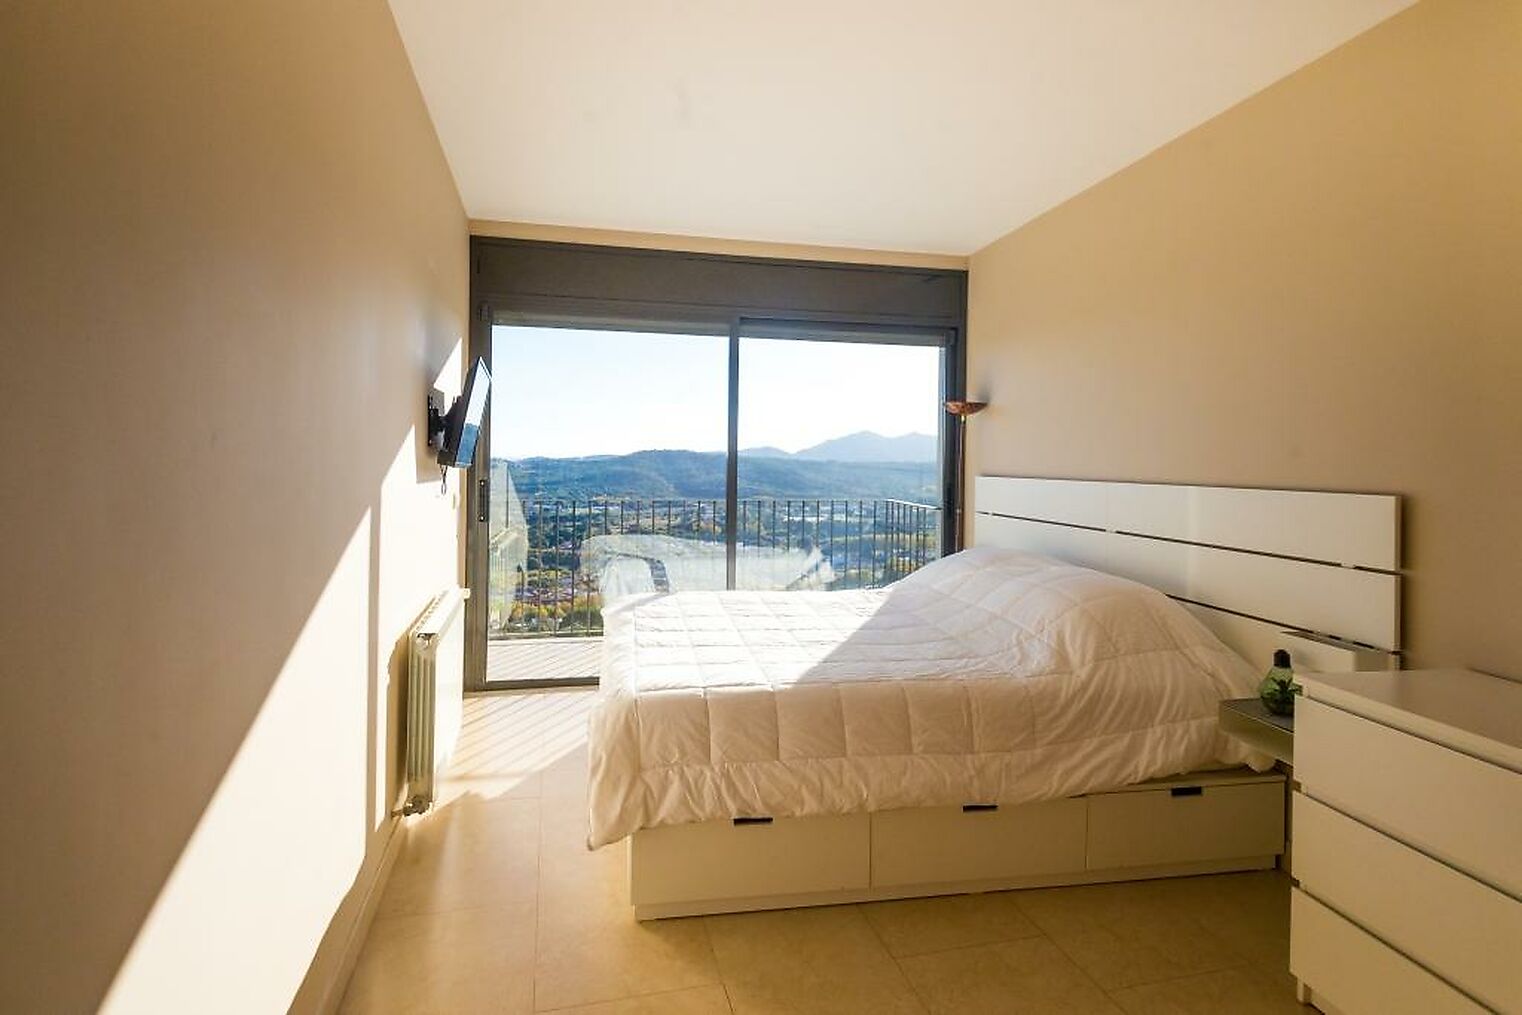 Casa moderna amb vistes panoràmiques a Platja d'Aro